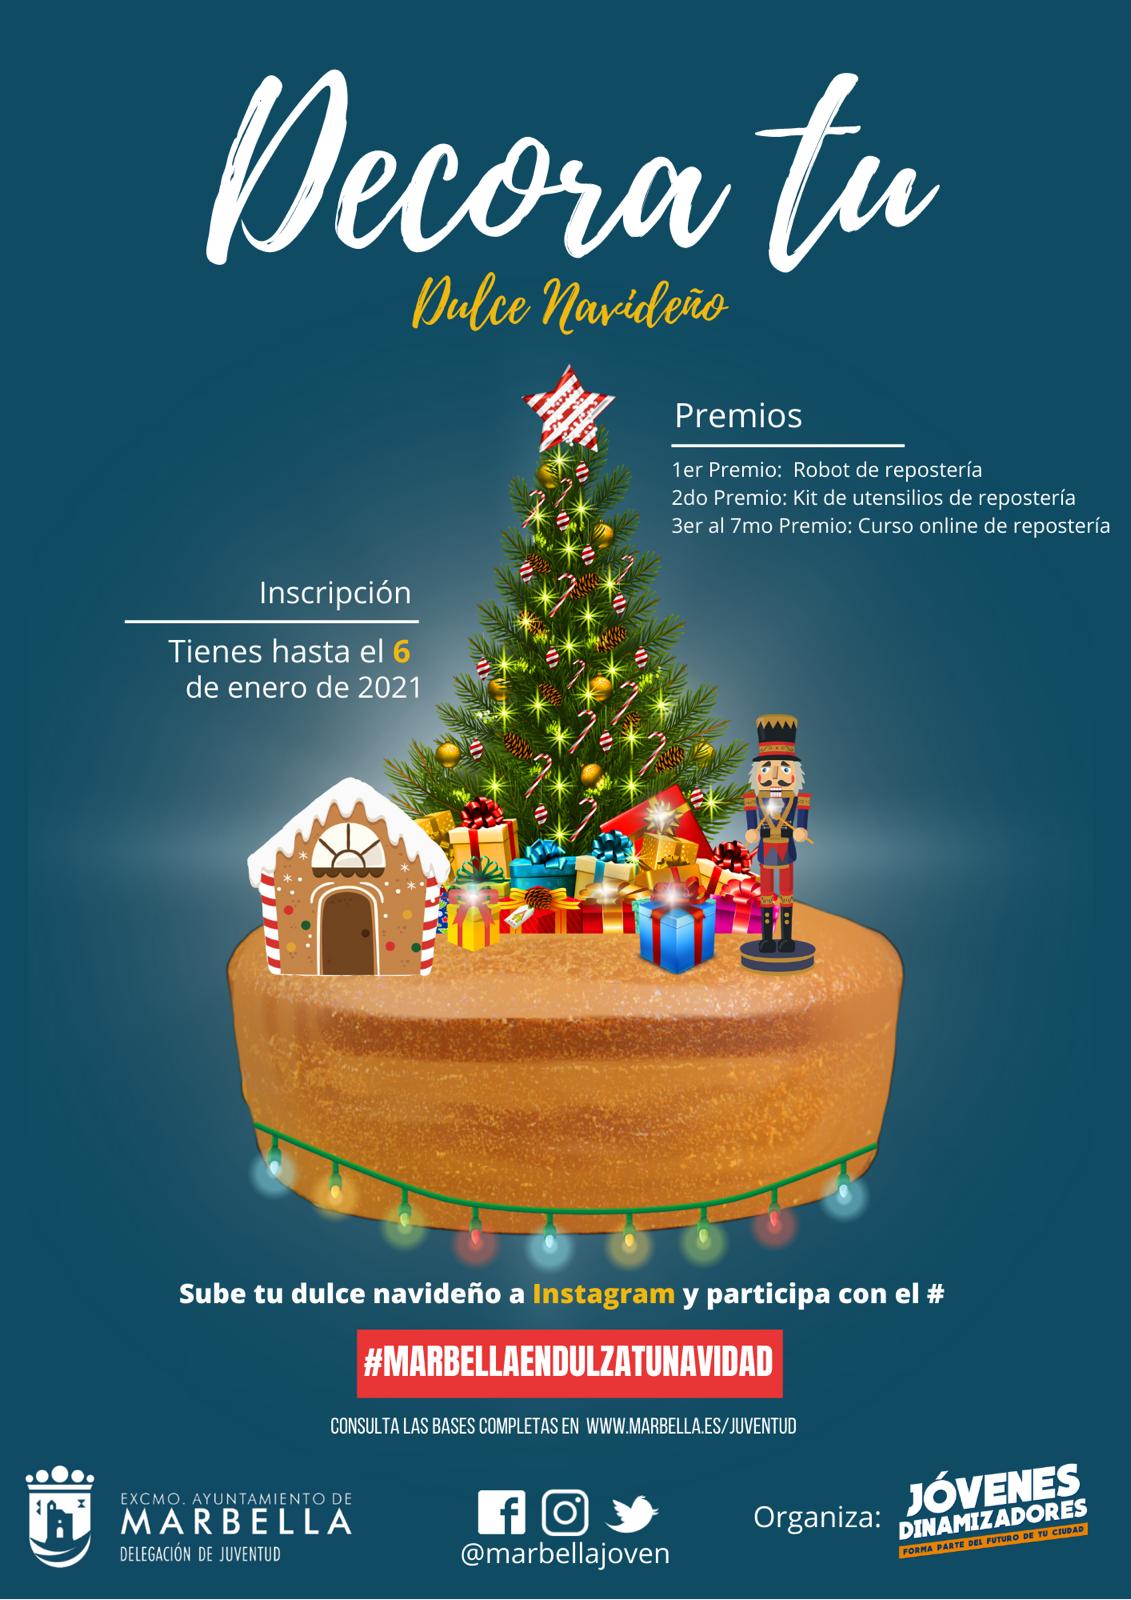 La delegación de Juventud organiza un concurso que premiará el dulce navideño más creativo y original del municipio